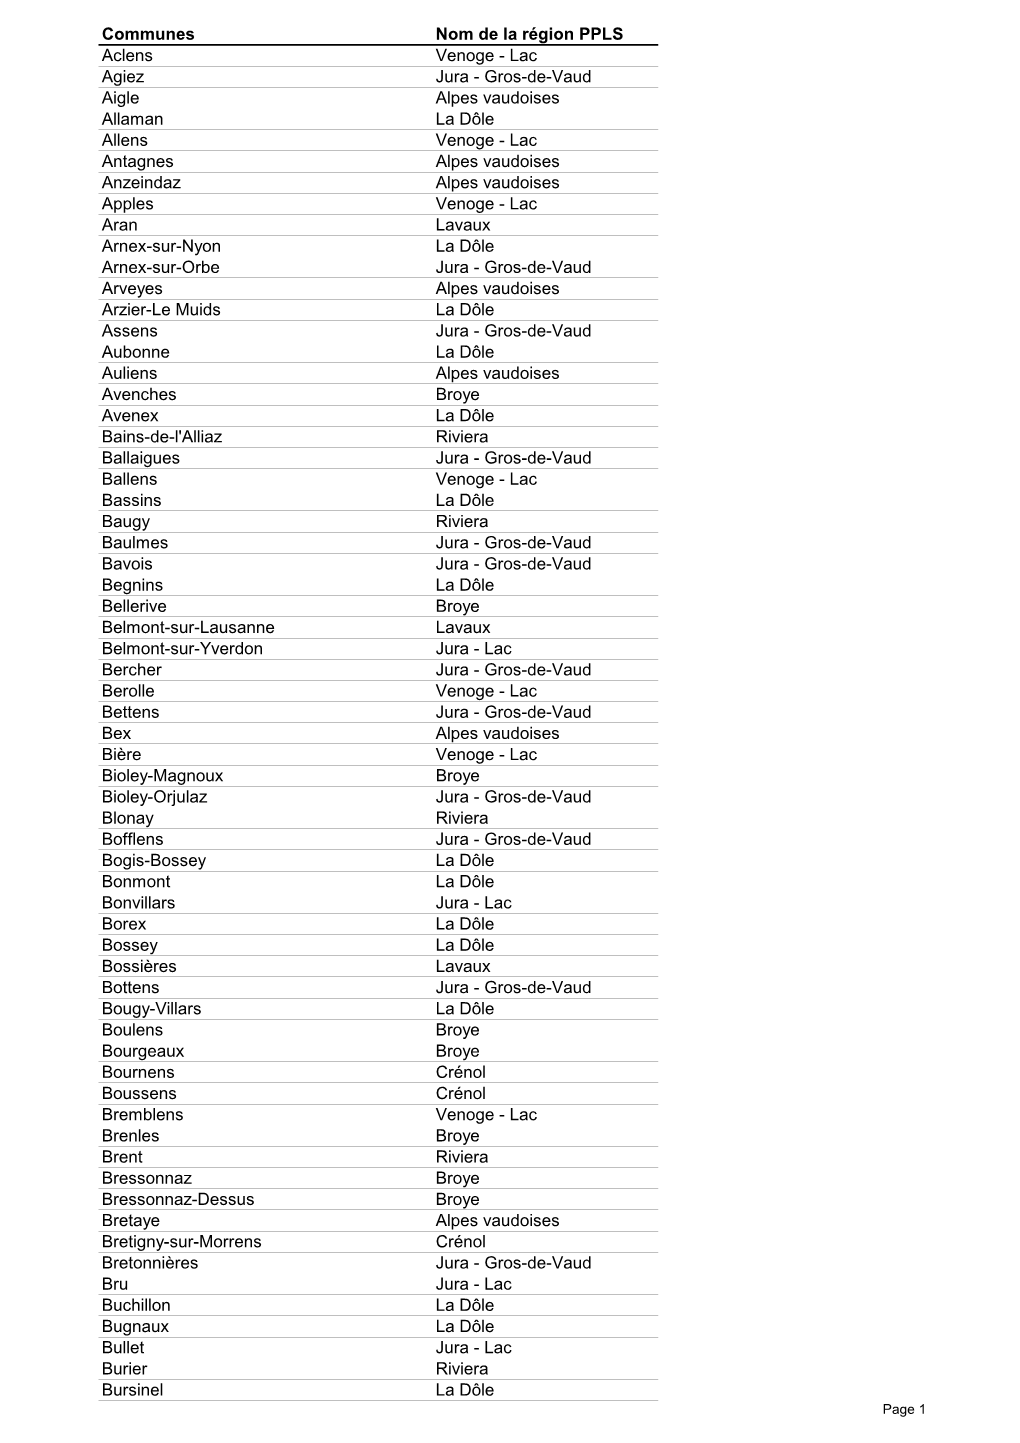 Liste Communes-Régions